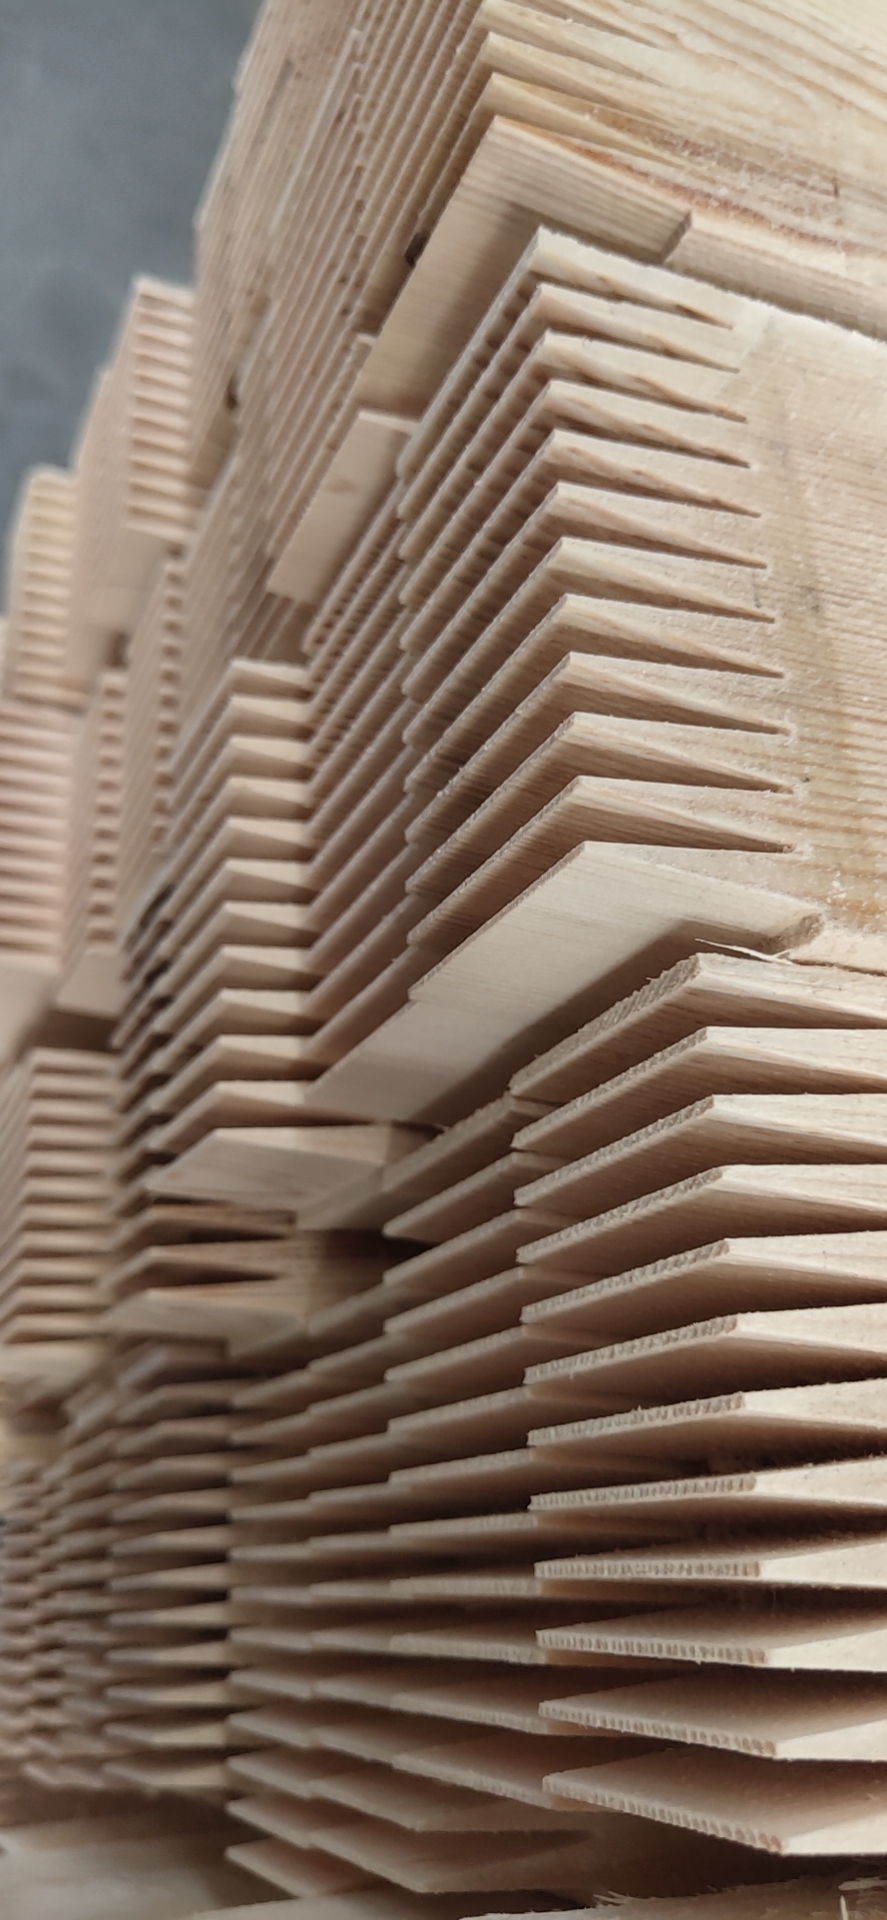 胶合木在木结构中使用的优越性